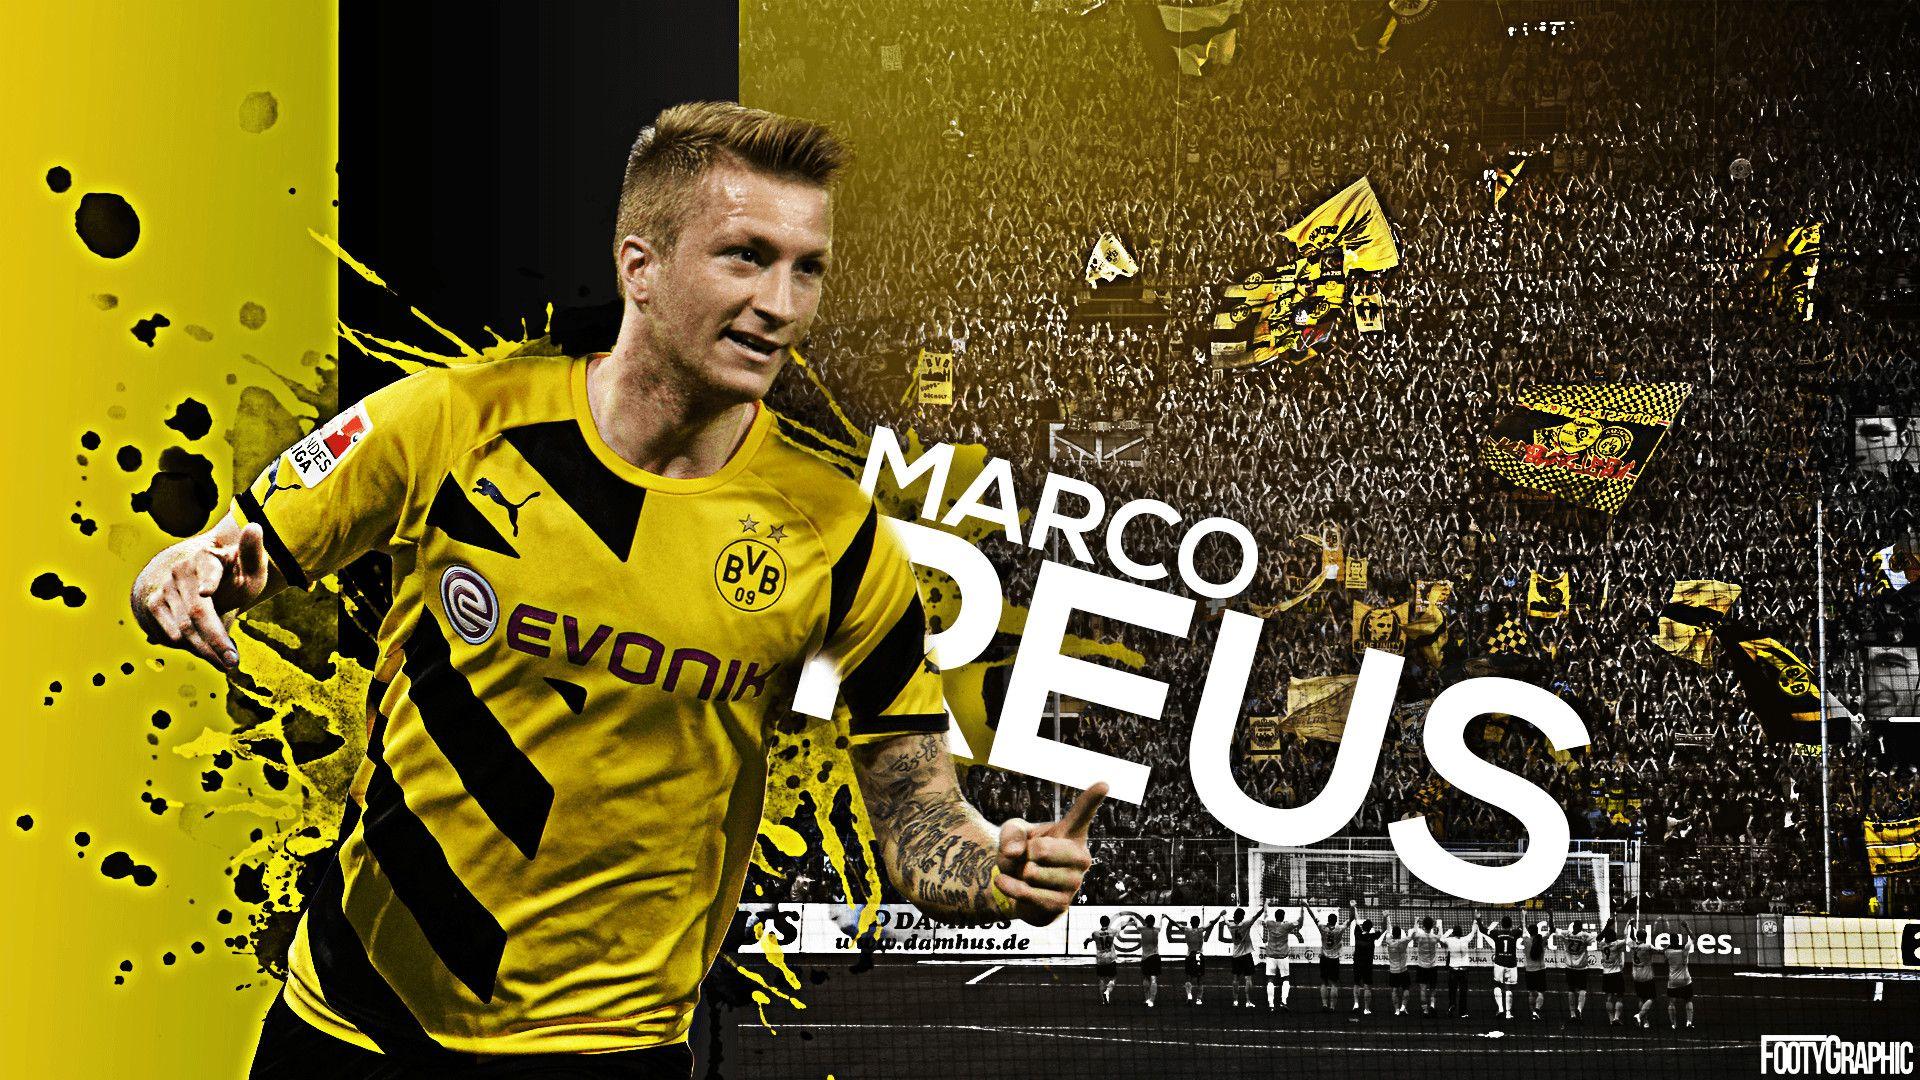 Hình nền  bóng đá Người BVB Borussia Dortmund Marco Reus người chơi  chính thức 1920x1200 px cầu thủ bóng đá 1920x1200  goodfon  602929  Hình  nền đẹp hd  WallHere